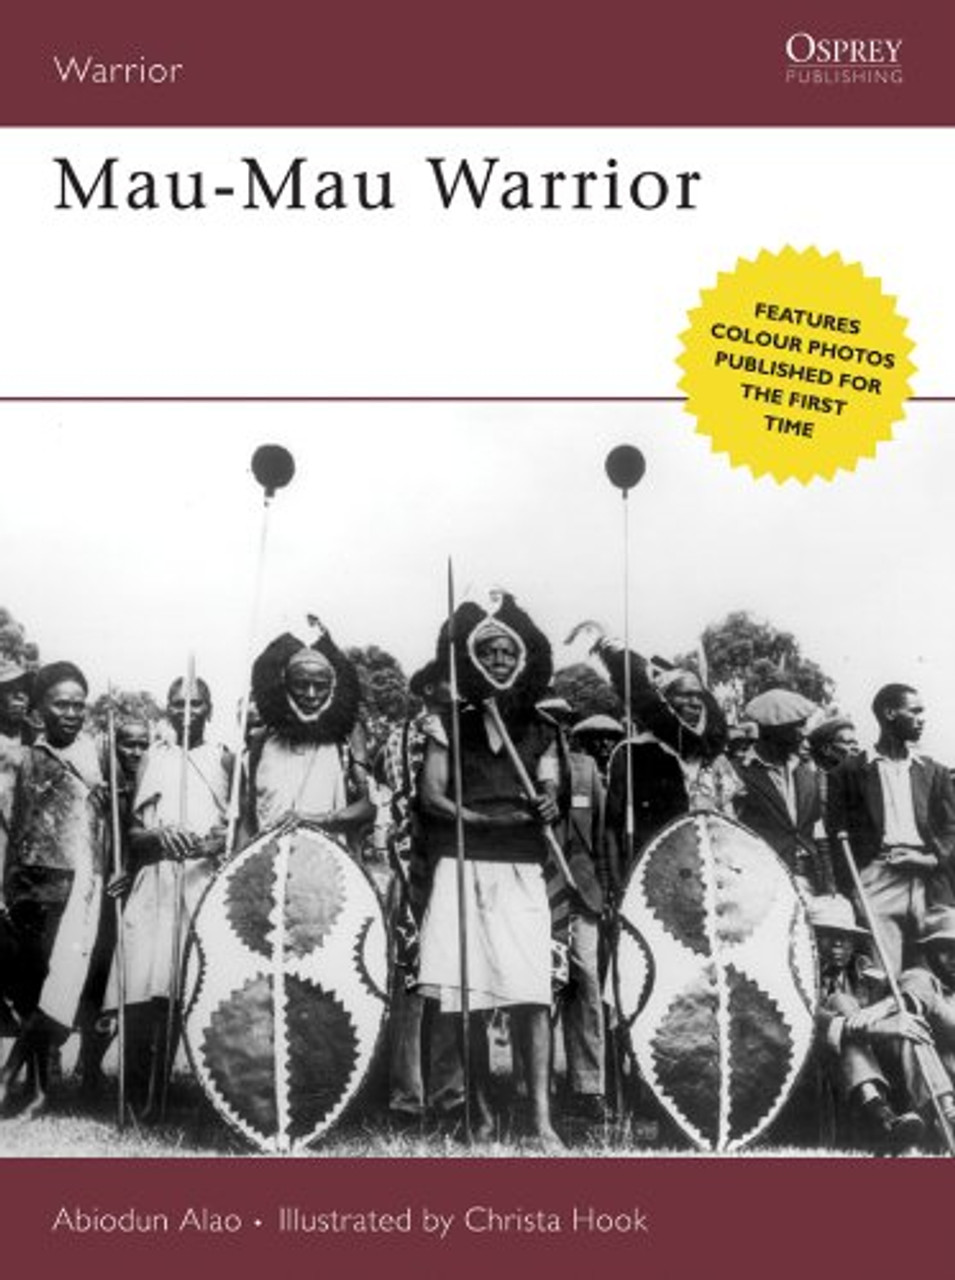 WAR108 - Mau-Mau Warrior